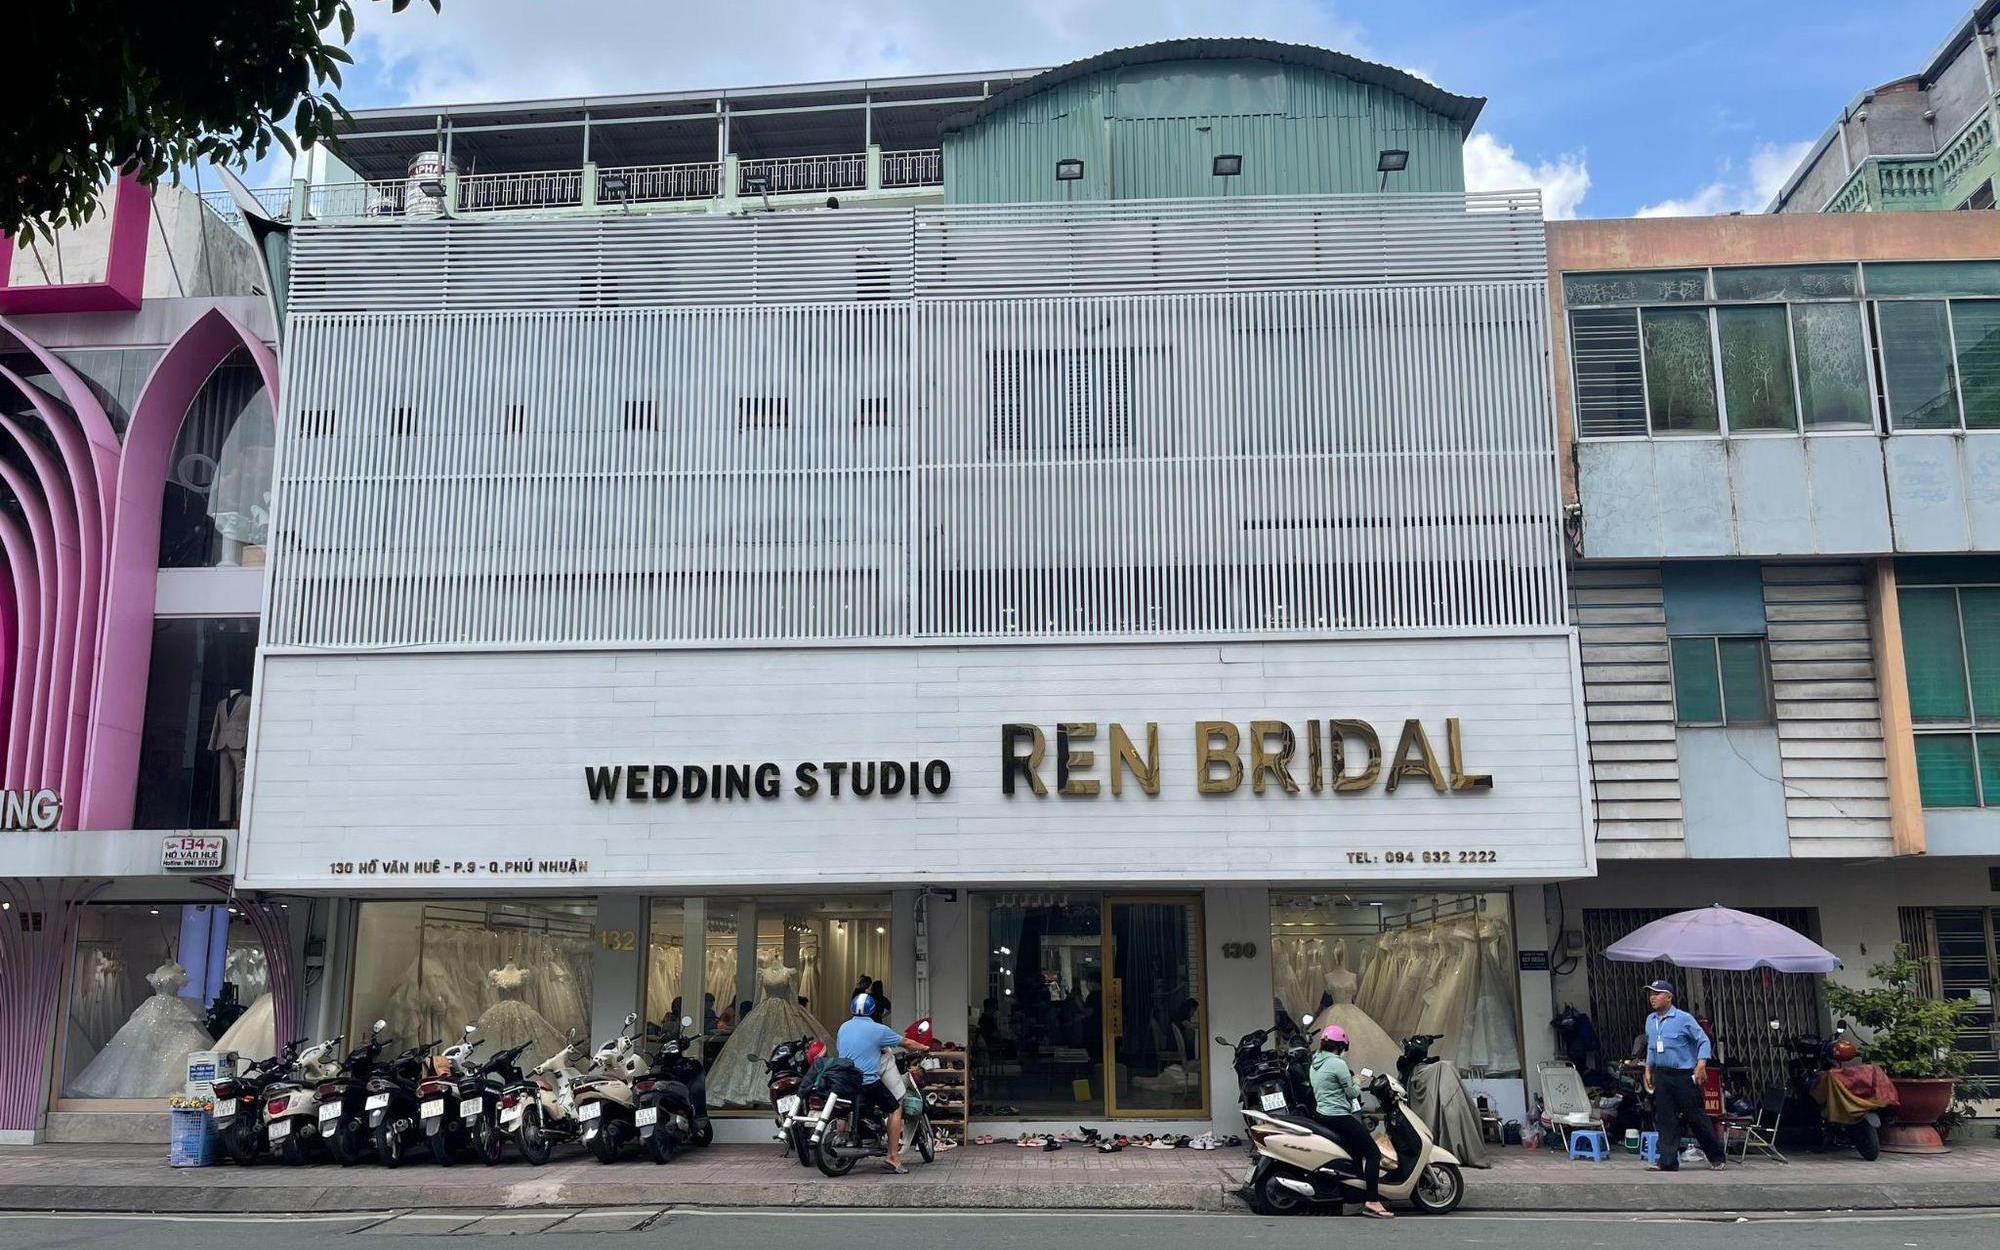 REN Bridal Studio: Tận hưởng sự tinh tế và chuyên nghiệp của REN Bridal Studio - một trong những studio chụp ảnh cưới hàng đầu tại Việt Nam. Với một đội ngũ chuyên viên tận tâm và sáng tạo, bạn sẽ được trải nghiệm một buổi chụp ảnh đầy ý nghĩa và chất lượng. Xem ngay hình ảnh liên quan đến REN Bridal Studio và chuẩn bị cho bộ ảnh cưới đẹp nhất của bạn!